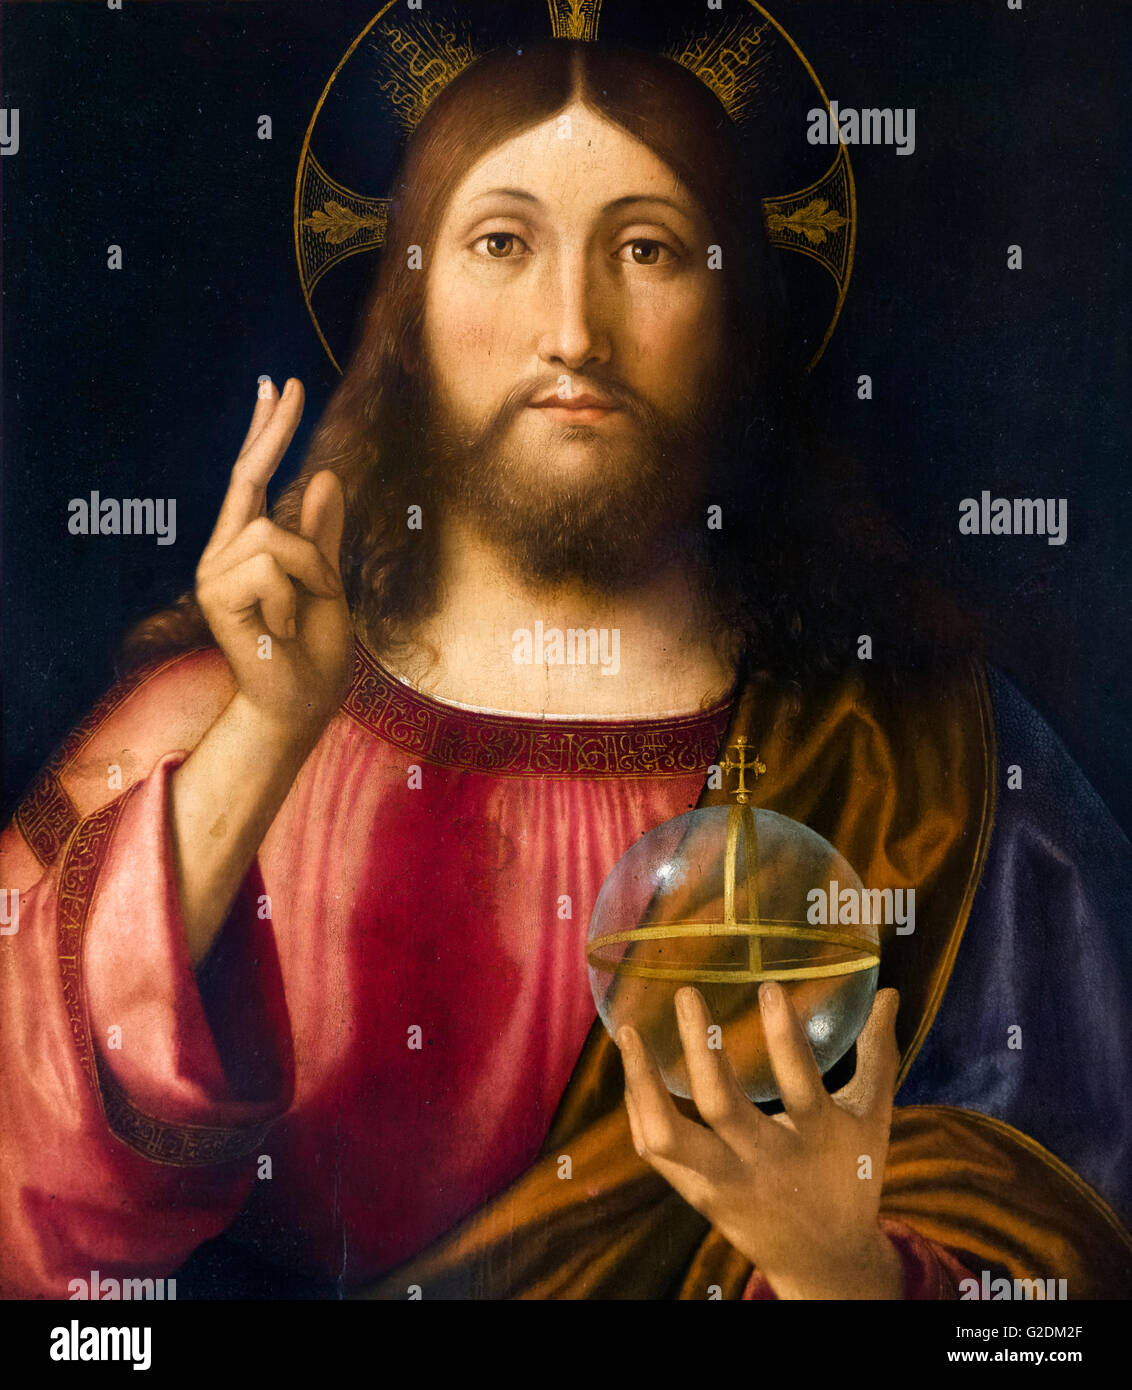 Salvator mundi par Andrea Previtali, huile sur bois, 1519. La peinture représente Jésus Christ en donnant une bénédiction avec deux doigts. Banque D'Images